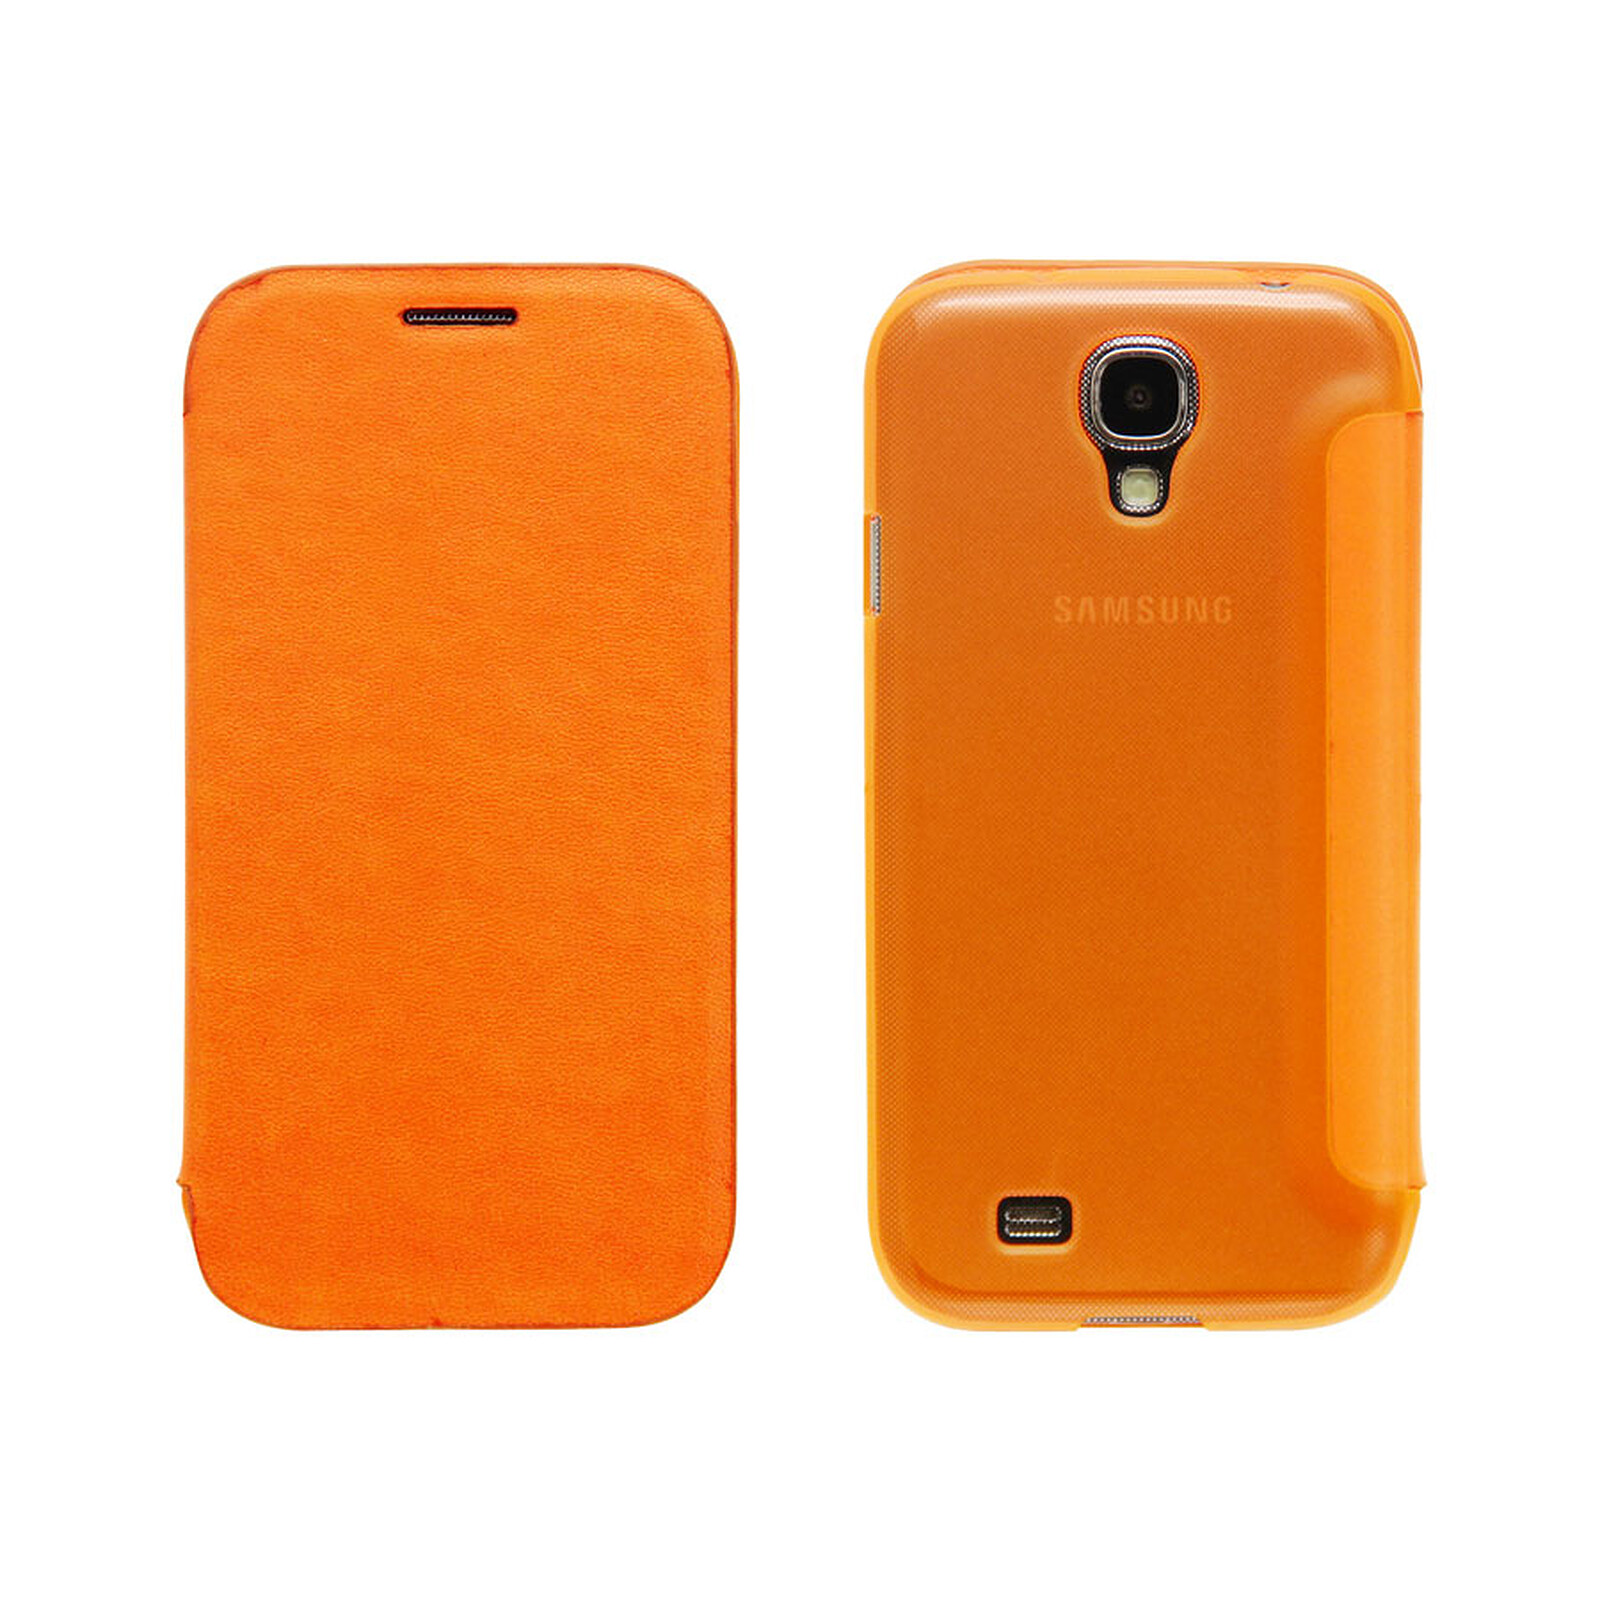 Floreren consensus Boekwinkel Case Scenario Bookcase Orange Samsung Galaxy S4 - Phone case Case Scenario  on LDLC | Holy Moley